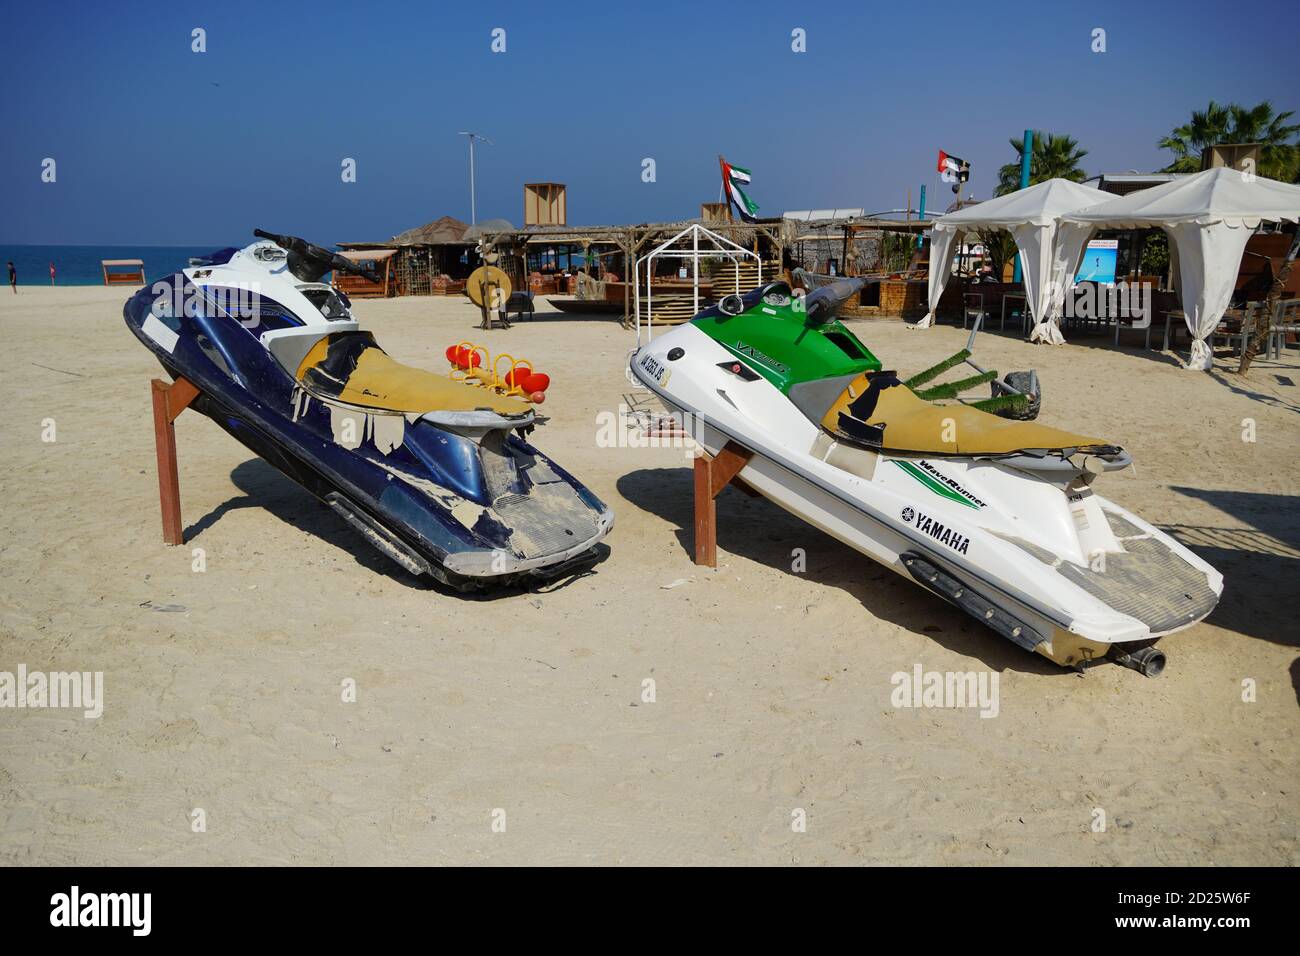 Zwei Bunte Jet Ski Am Strand Der Ferienzeit Geparkt. Old Jet Skis On The Beach On Wooden Trailer. Blue And White Jet Ski - Dubai Vae 20. Januar Stockfoto